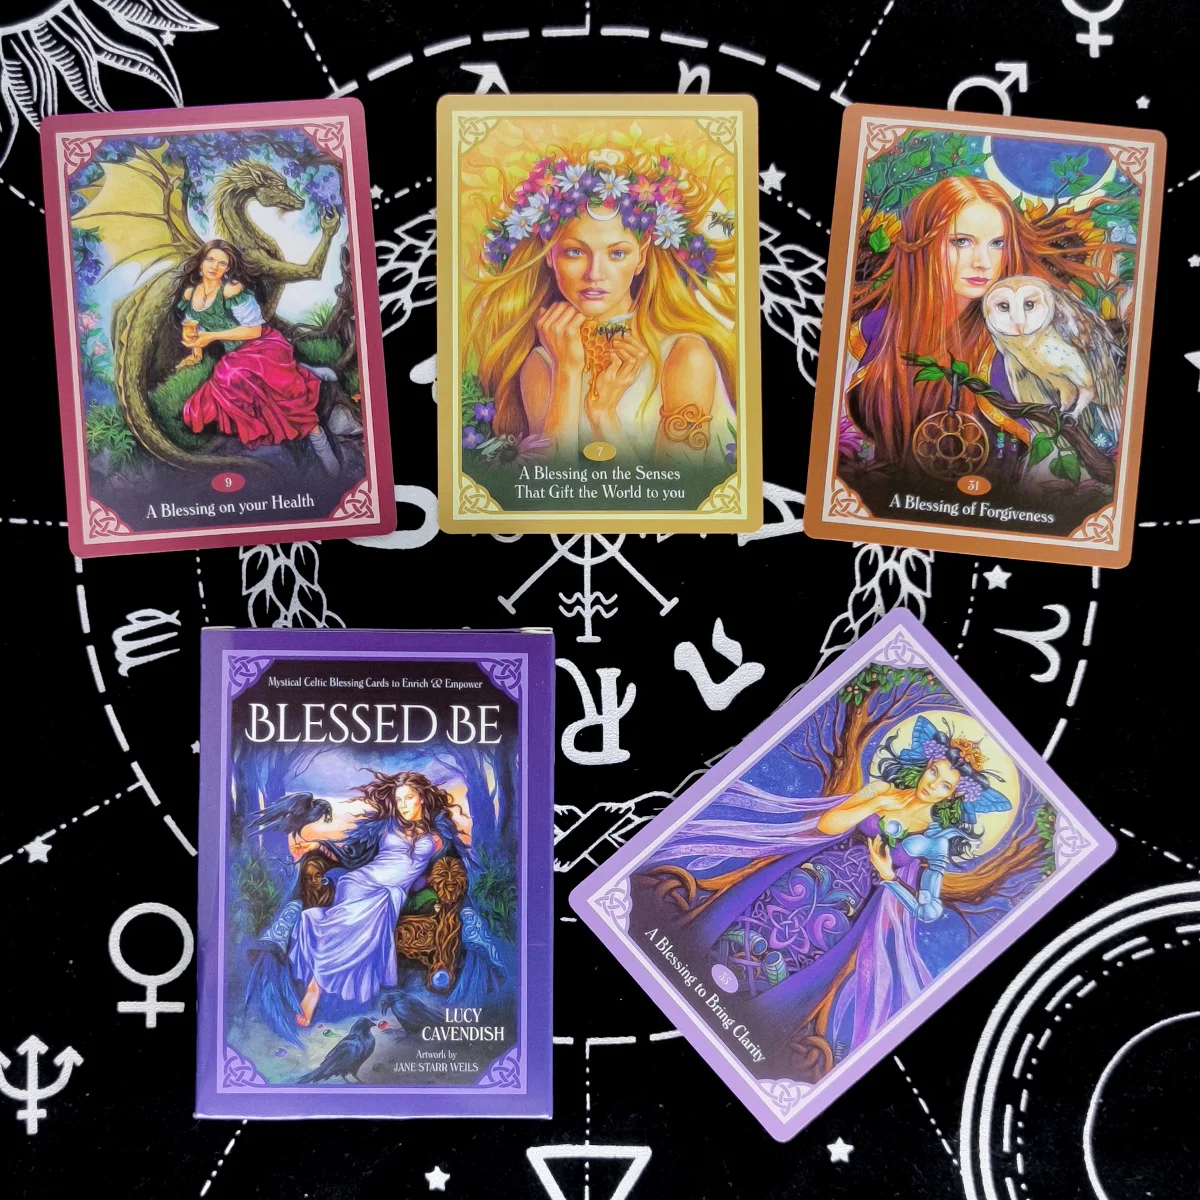 

Благословенные карты Be Card Tarot карты пророчество гадания колода английская версия развлечение настольная игра 46 листов/коробка